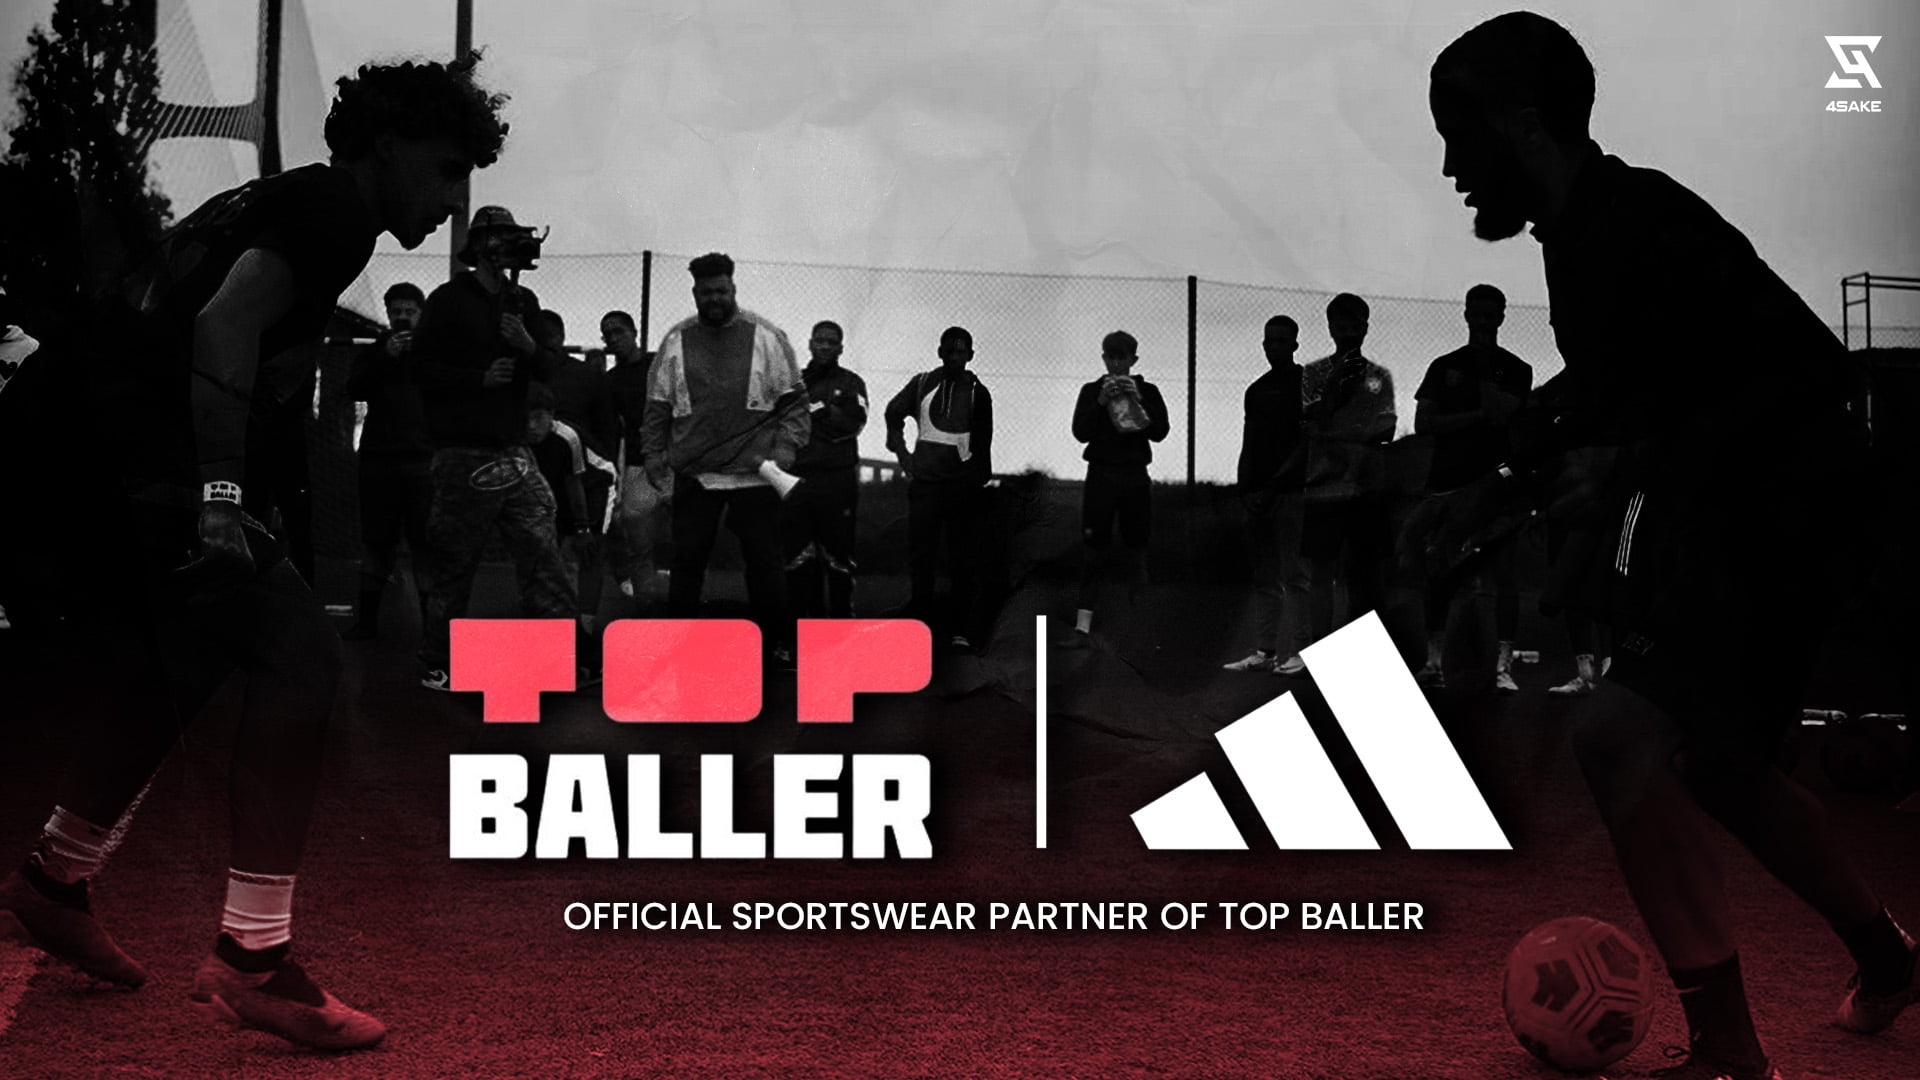 Top Baller & Adidas Predator Series Wrap Up